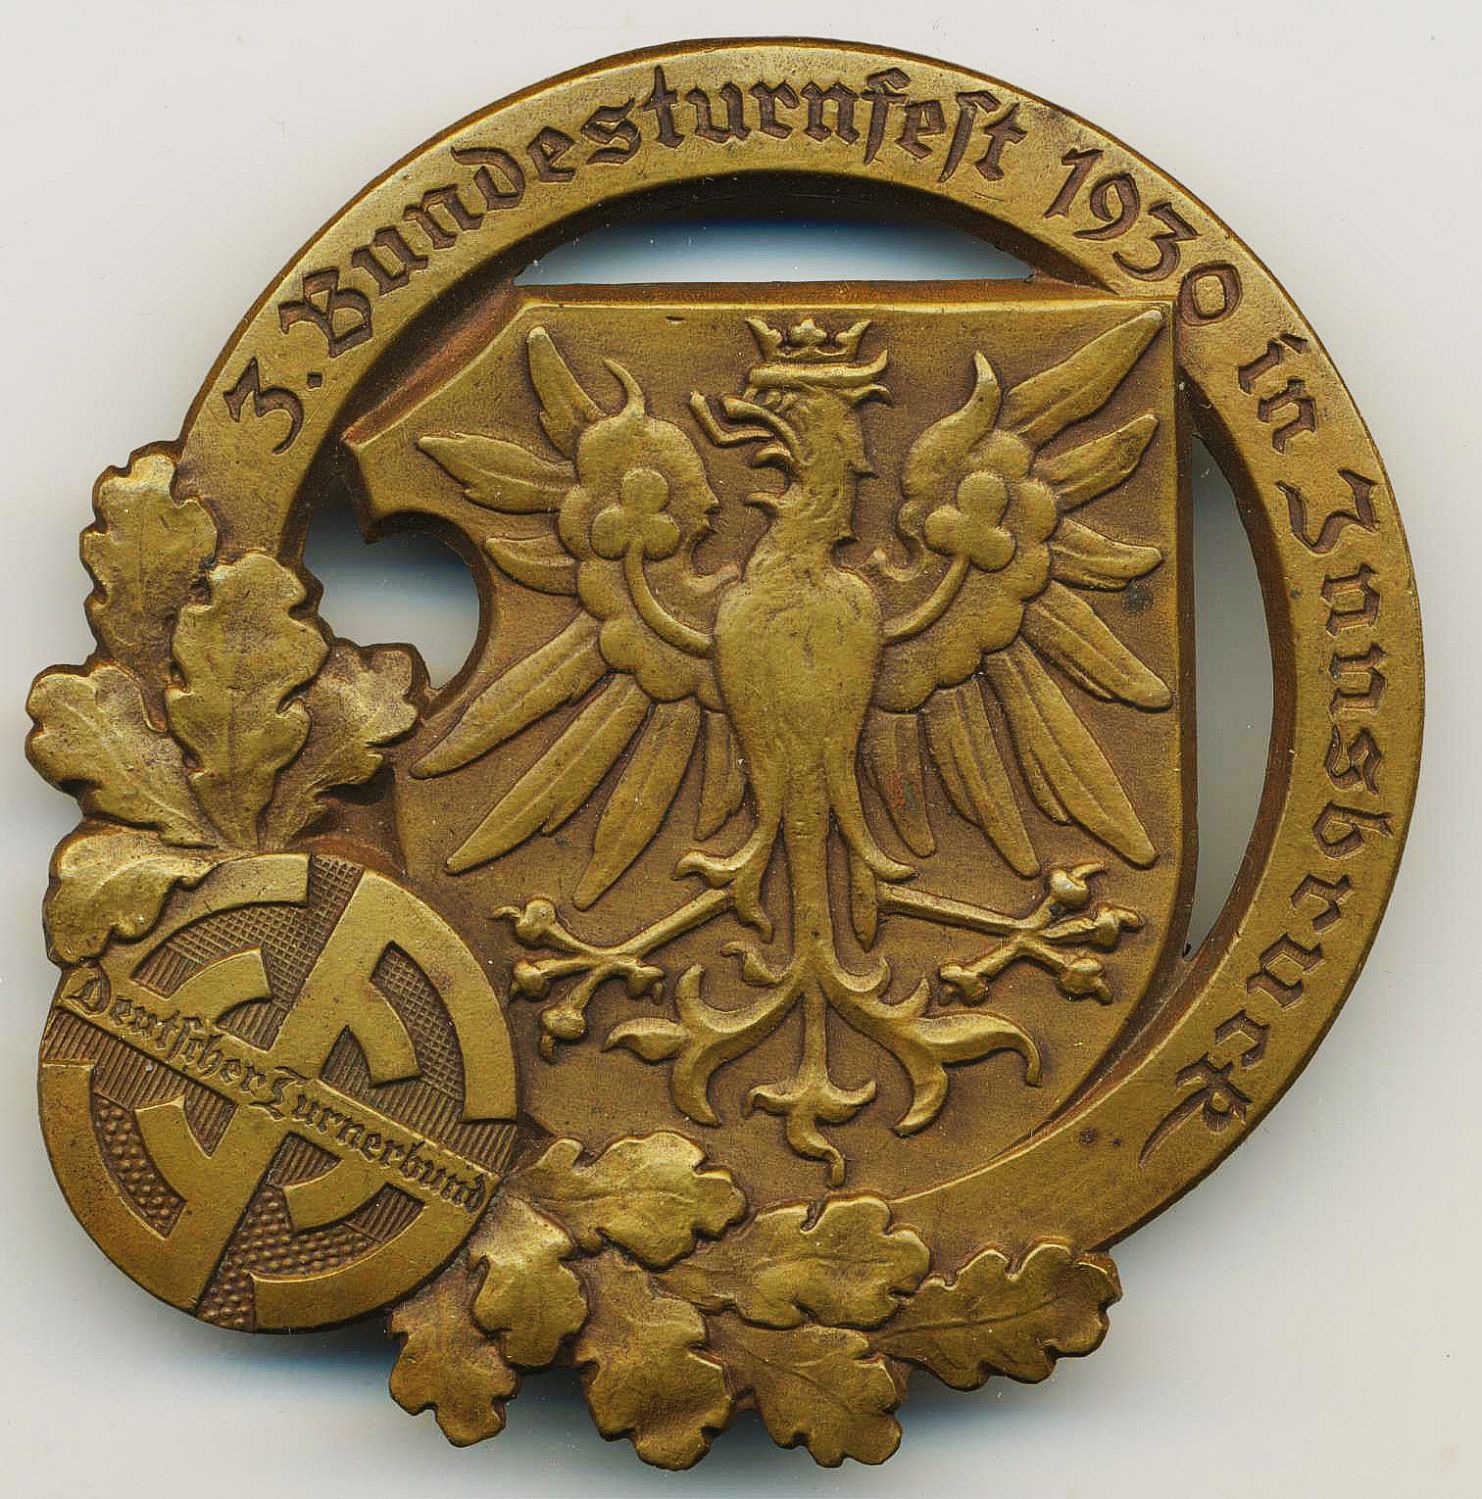 Bundesturnfest 1930